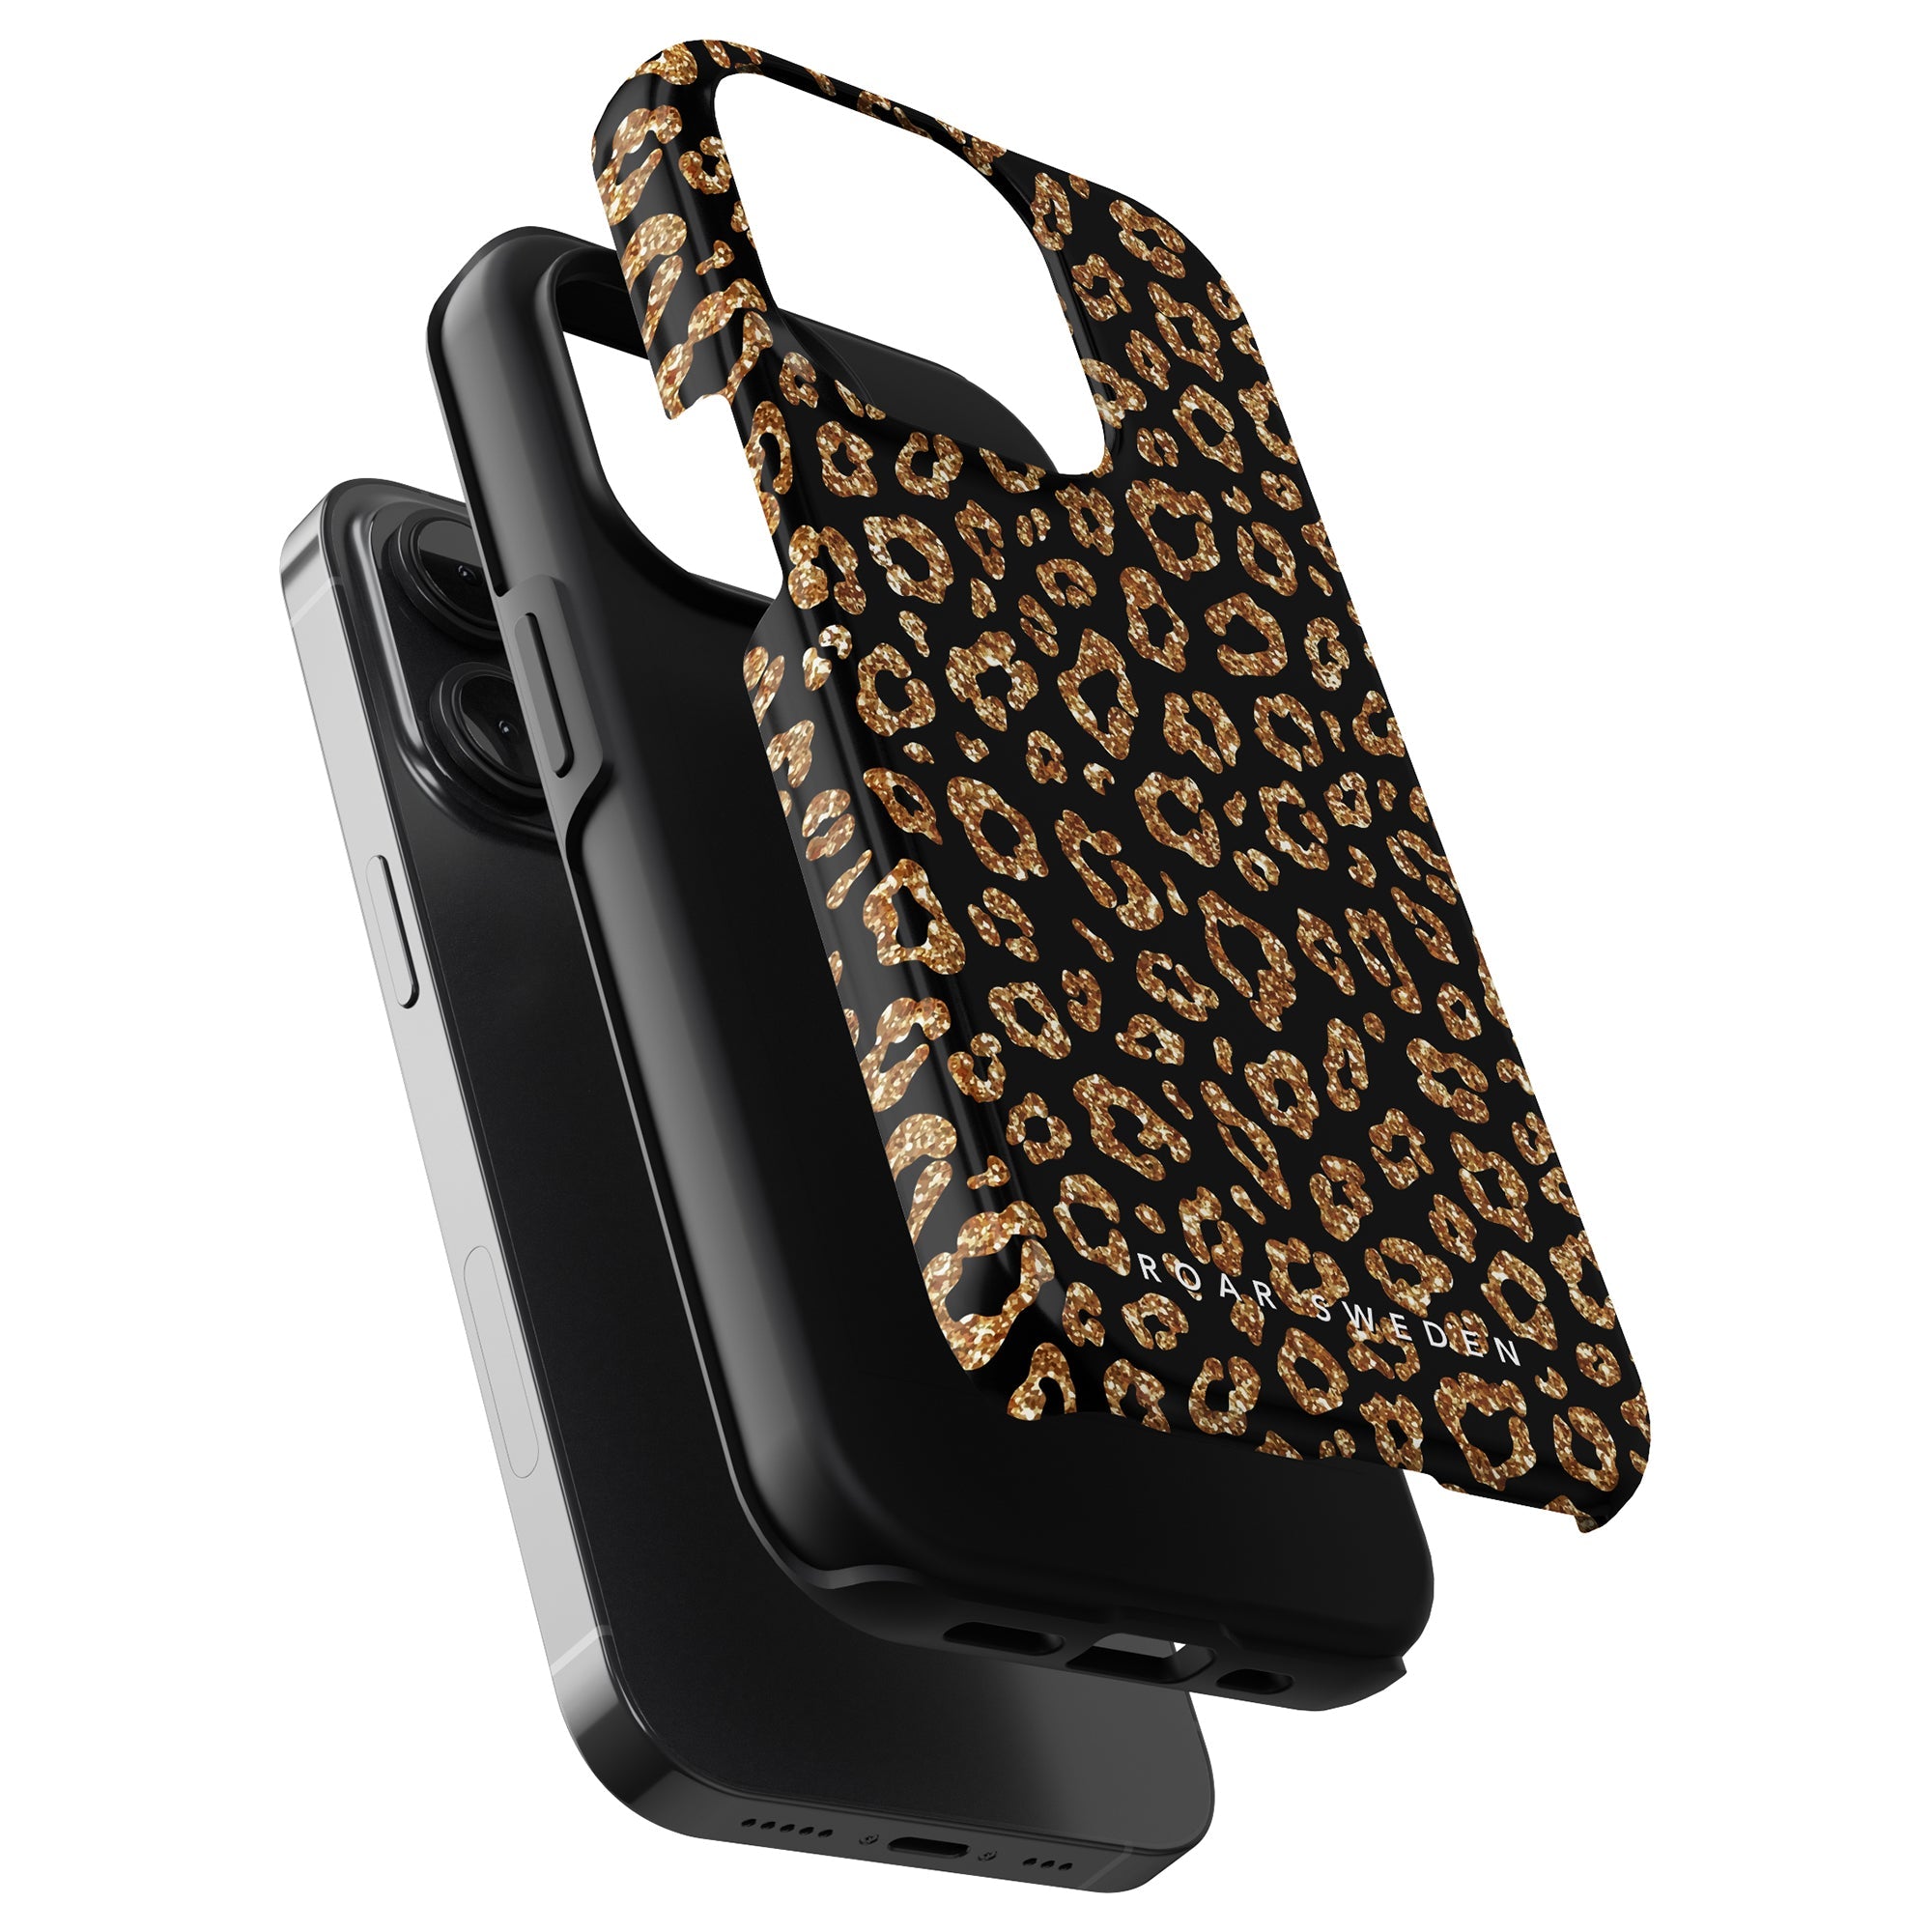 Lägg till en touch av mode till din iPhone 11 Pro med detta Kitty Glitter Tough Case, designat för både stil och skydd.